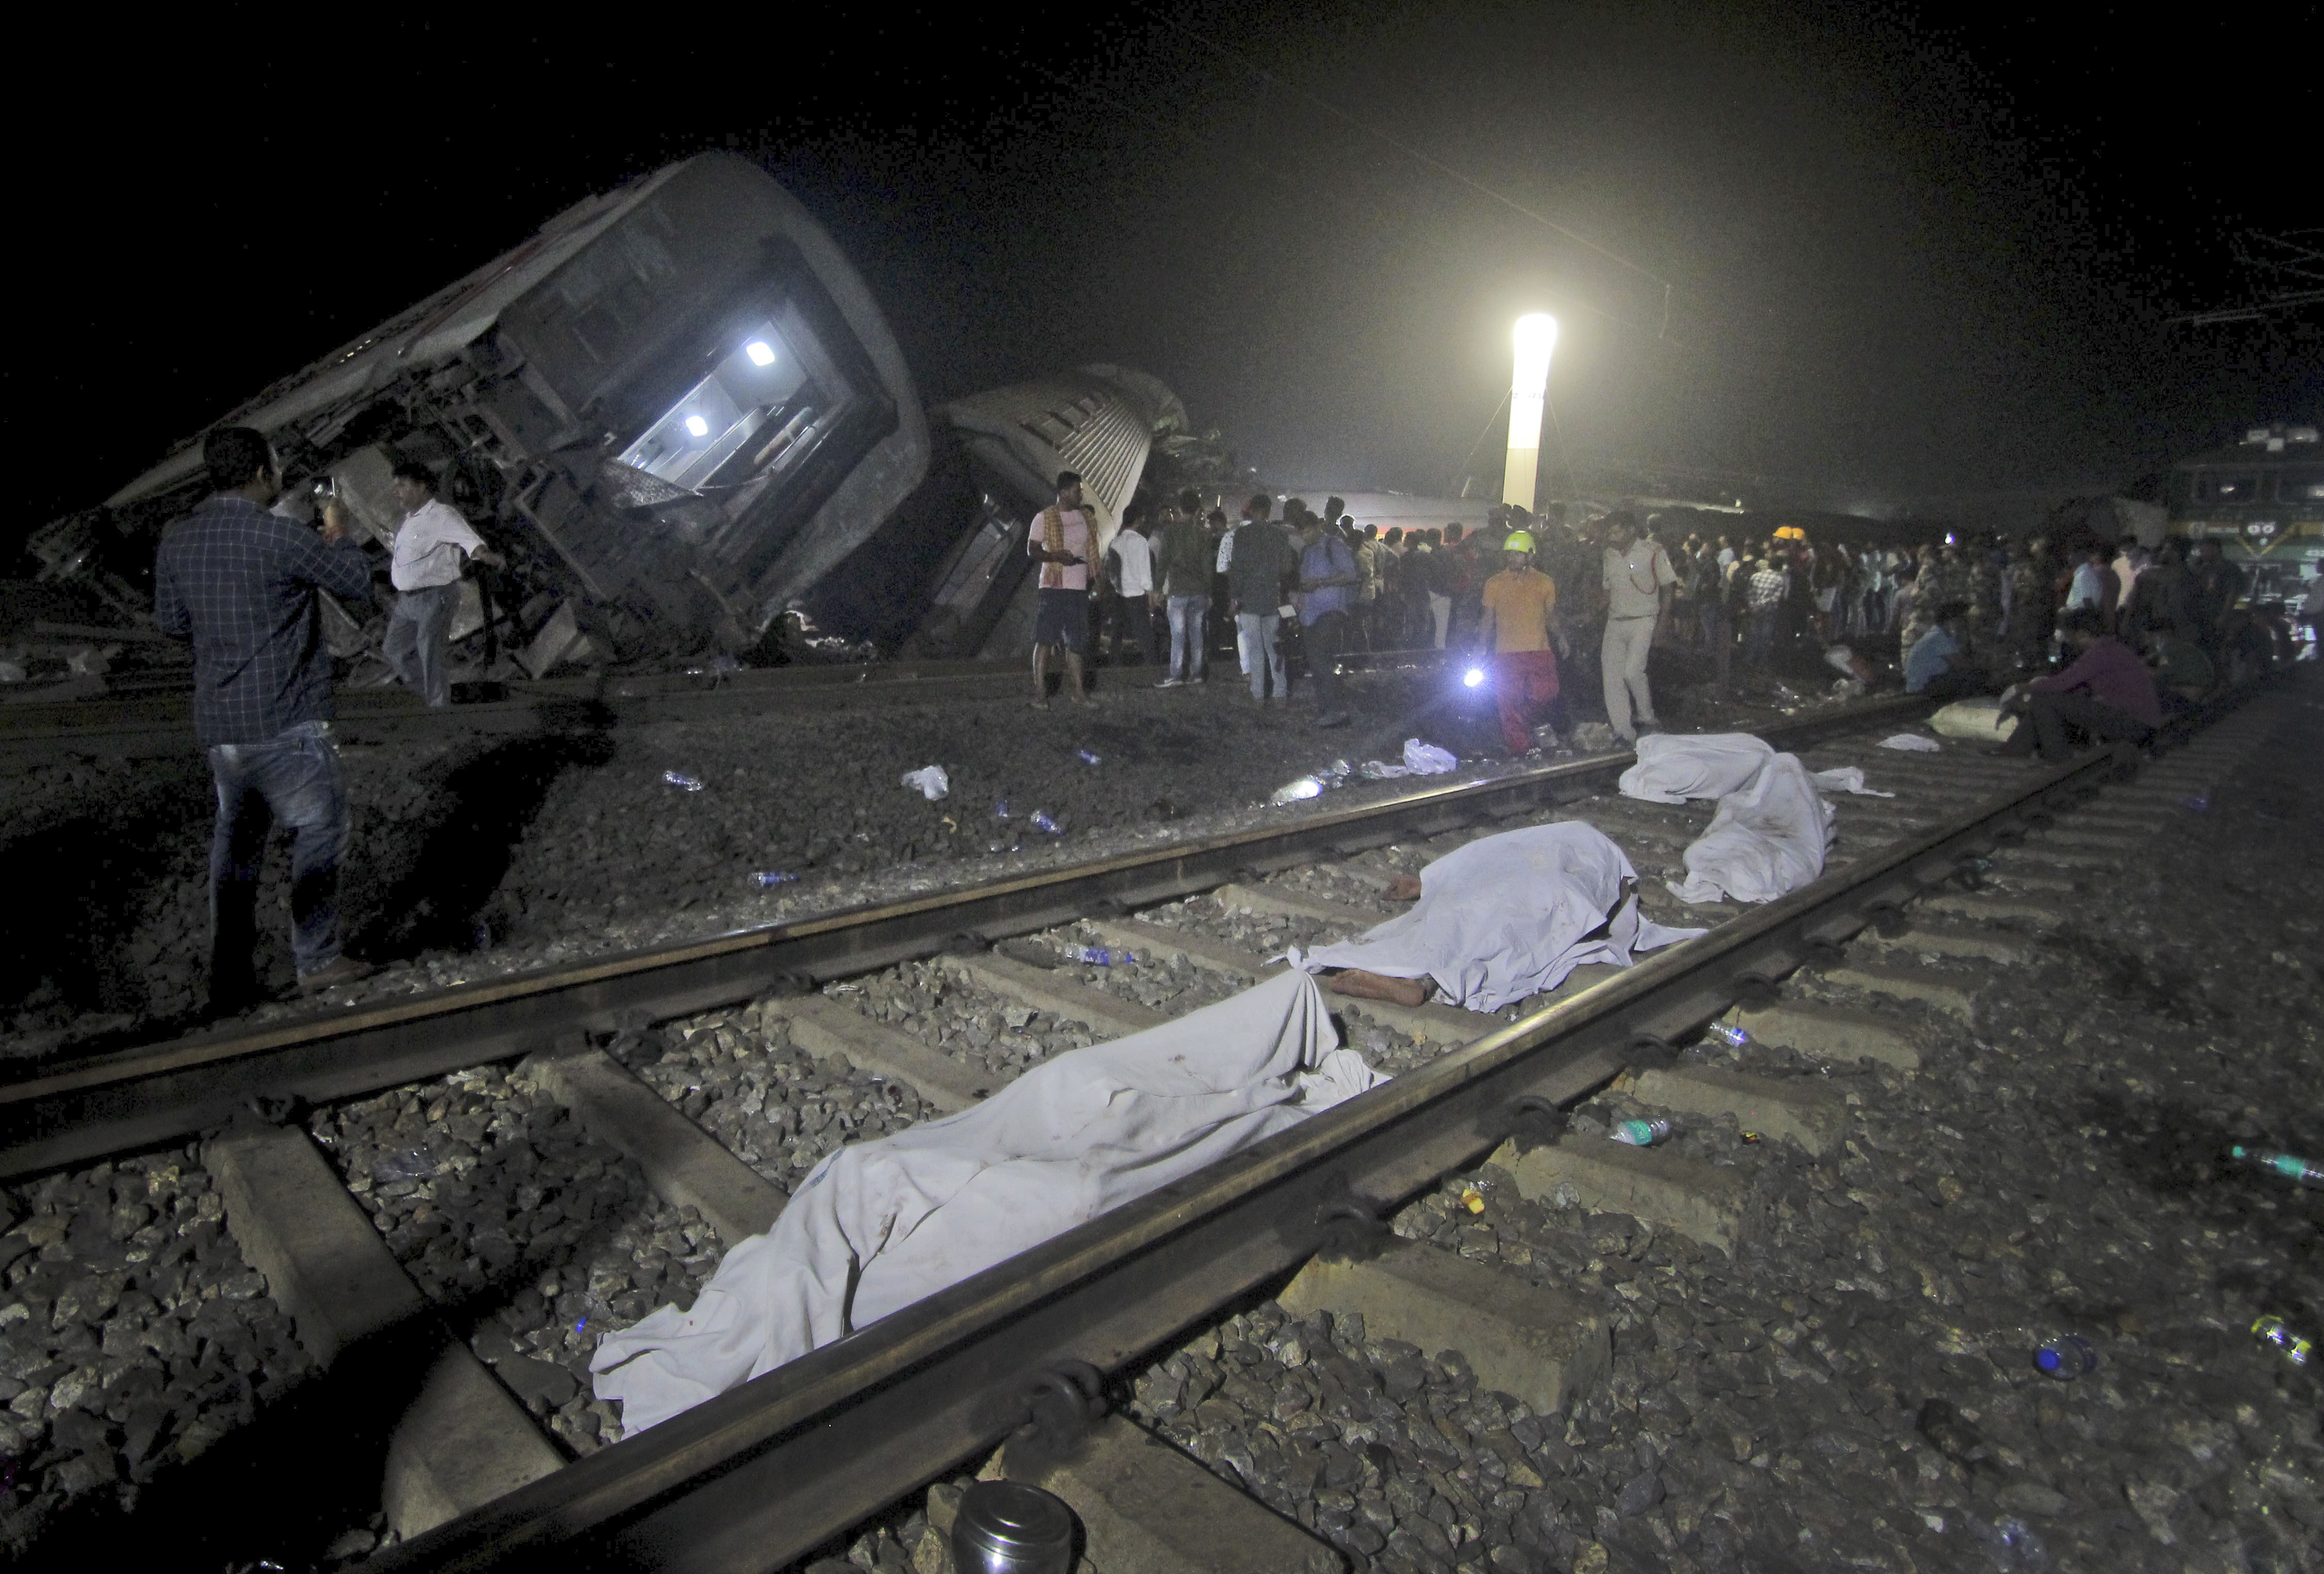 El accidente ferroviario más mortífero del país se remonta al 6 de junio de 1981 en el estado de Bihar (este), donde siete vagones de un tren se precipitaron desde un puente hasta un río causando entre 800 y 1.000 muertos. (AP)